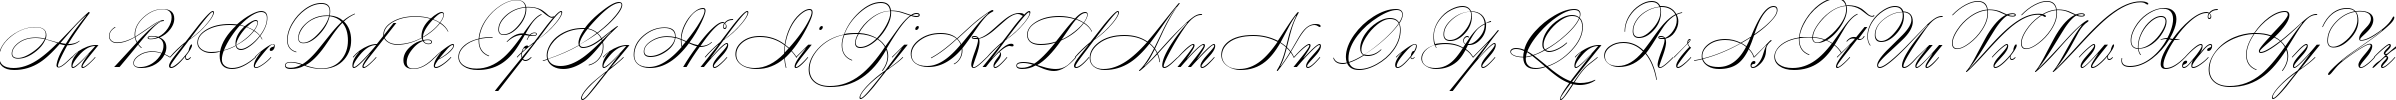 Пример написания английского алфавита шрифтом Wolfgang Amadeus Mozart